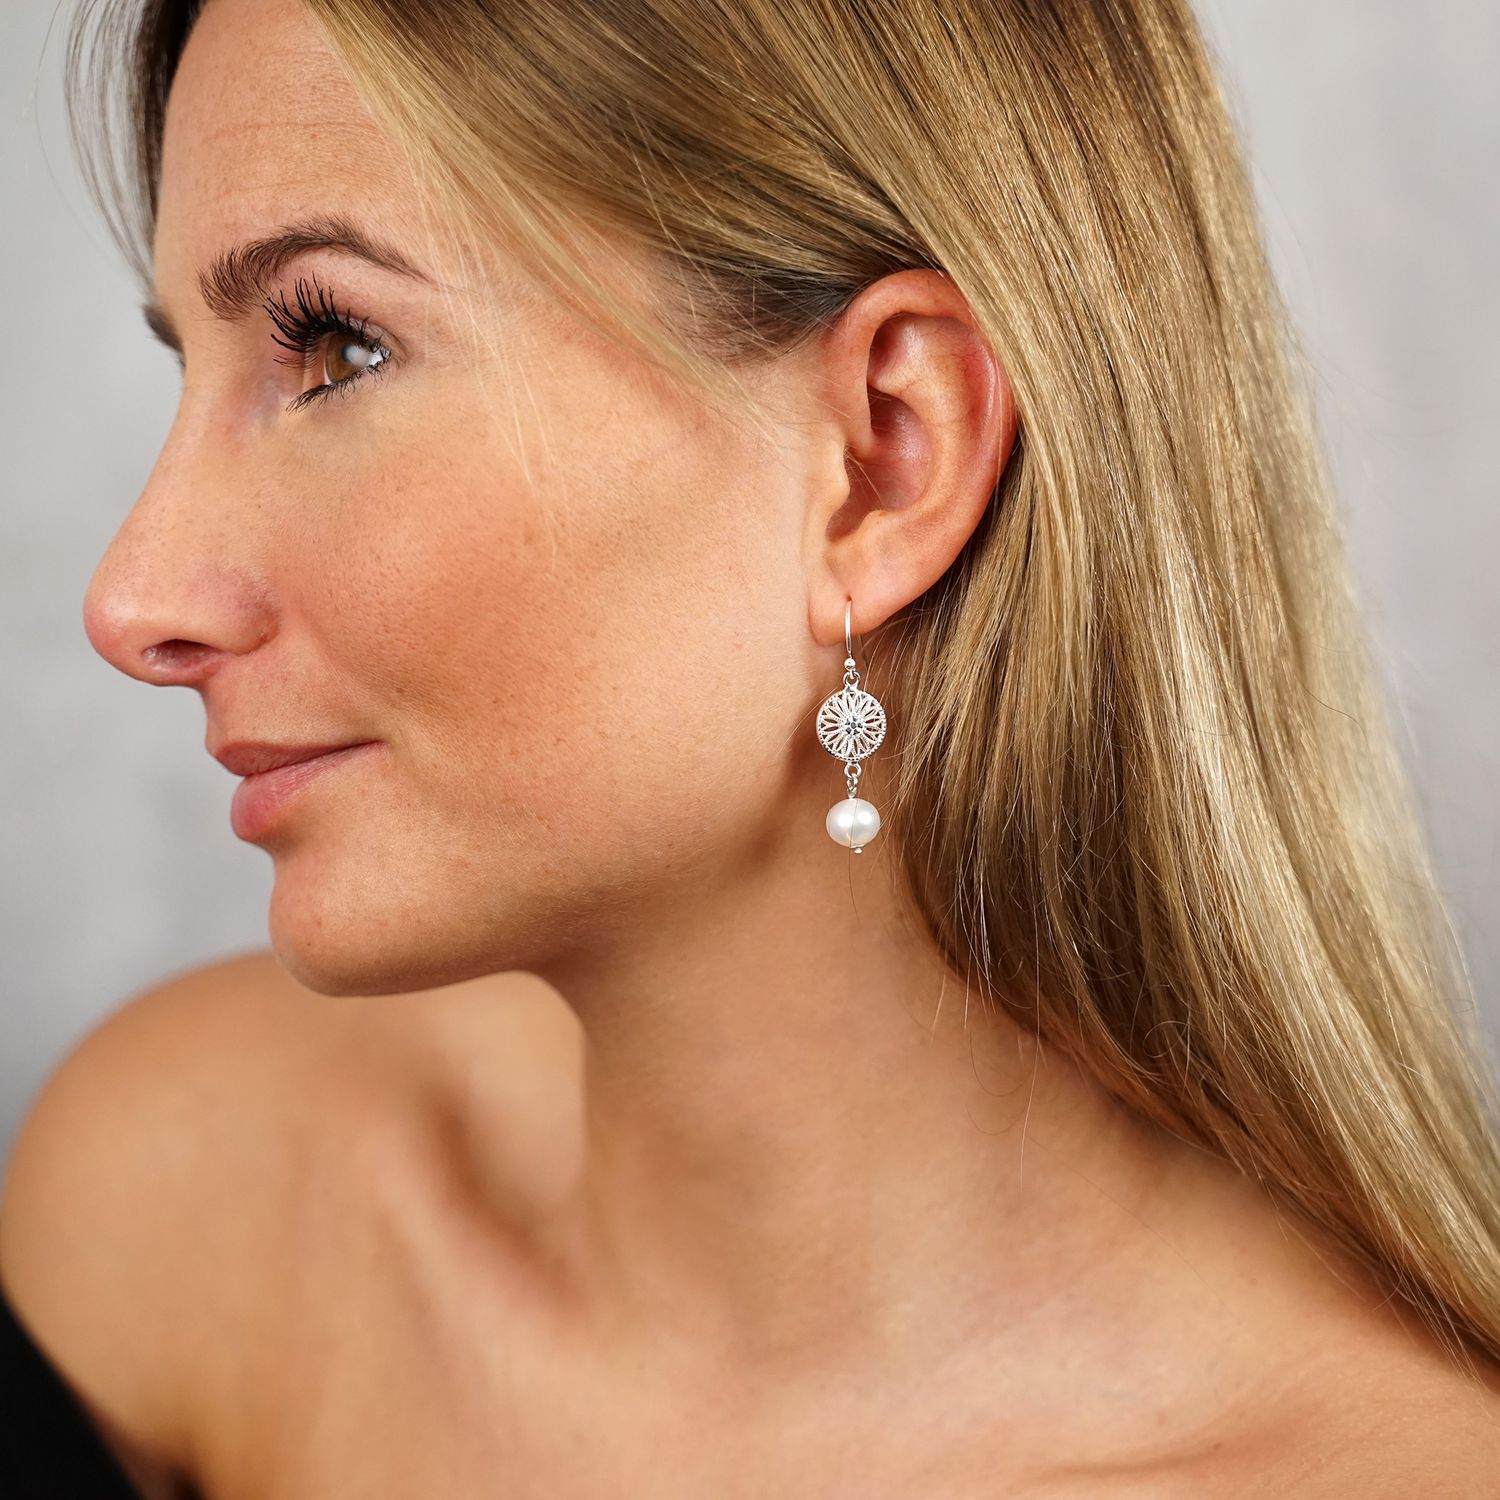 Echte Perlen Ohrringe: Zeitlose Eleganz für jeden Anlass